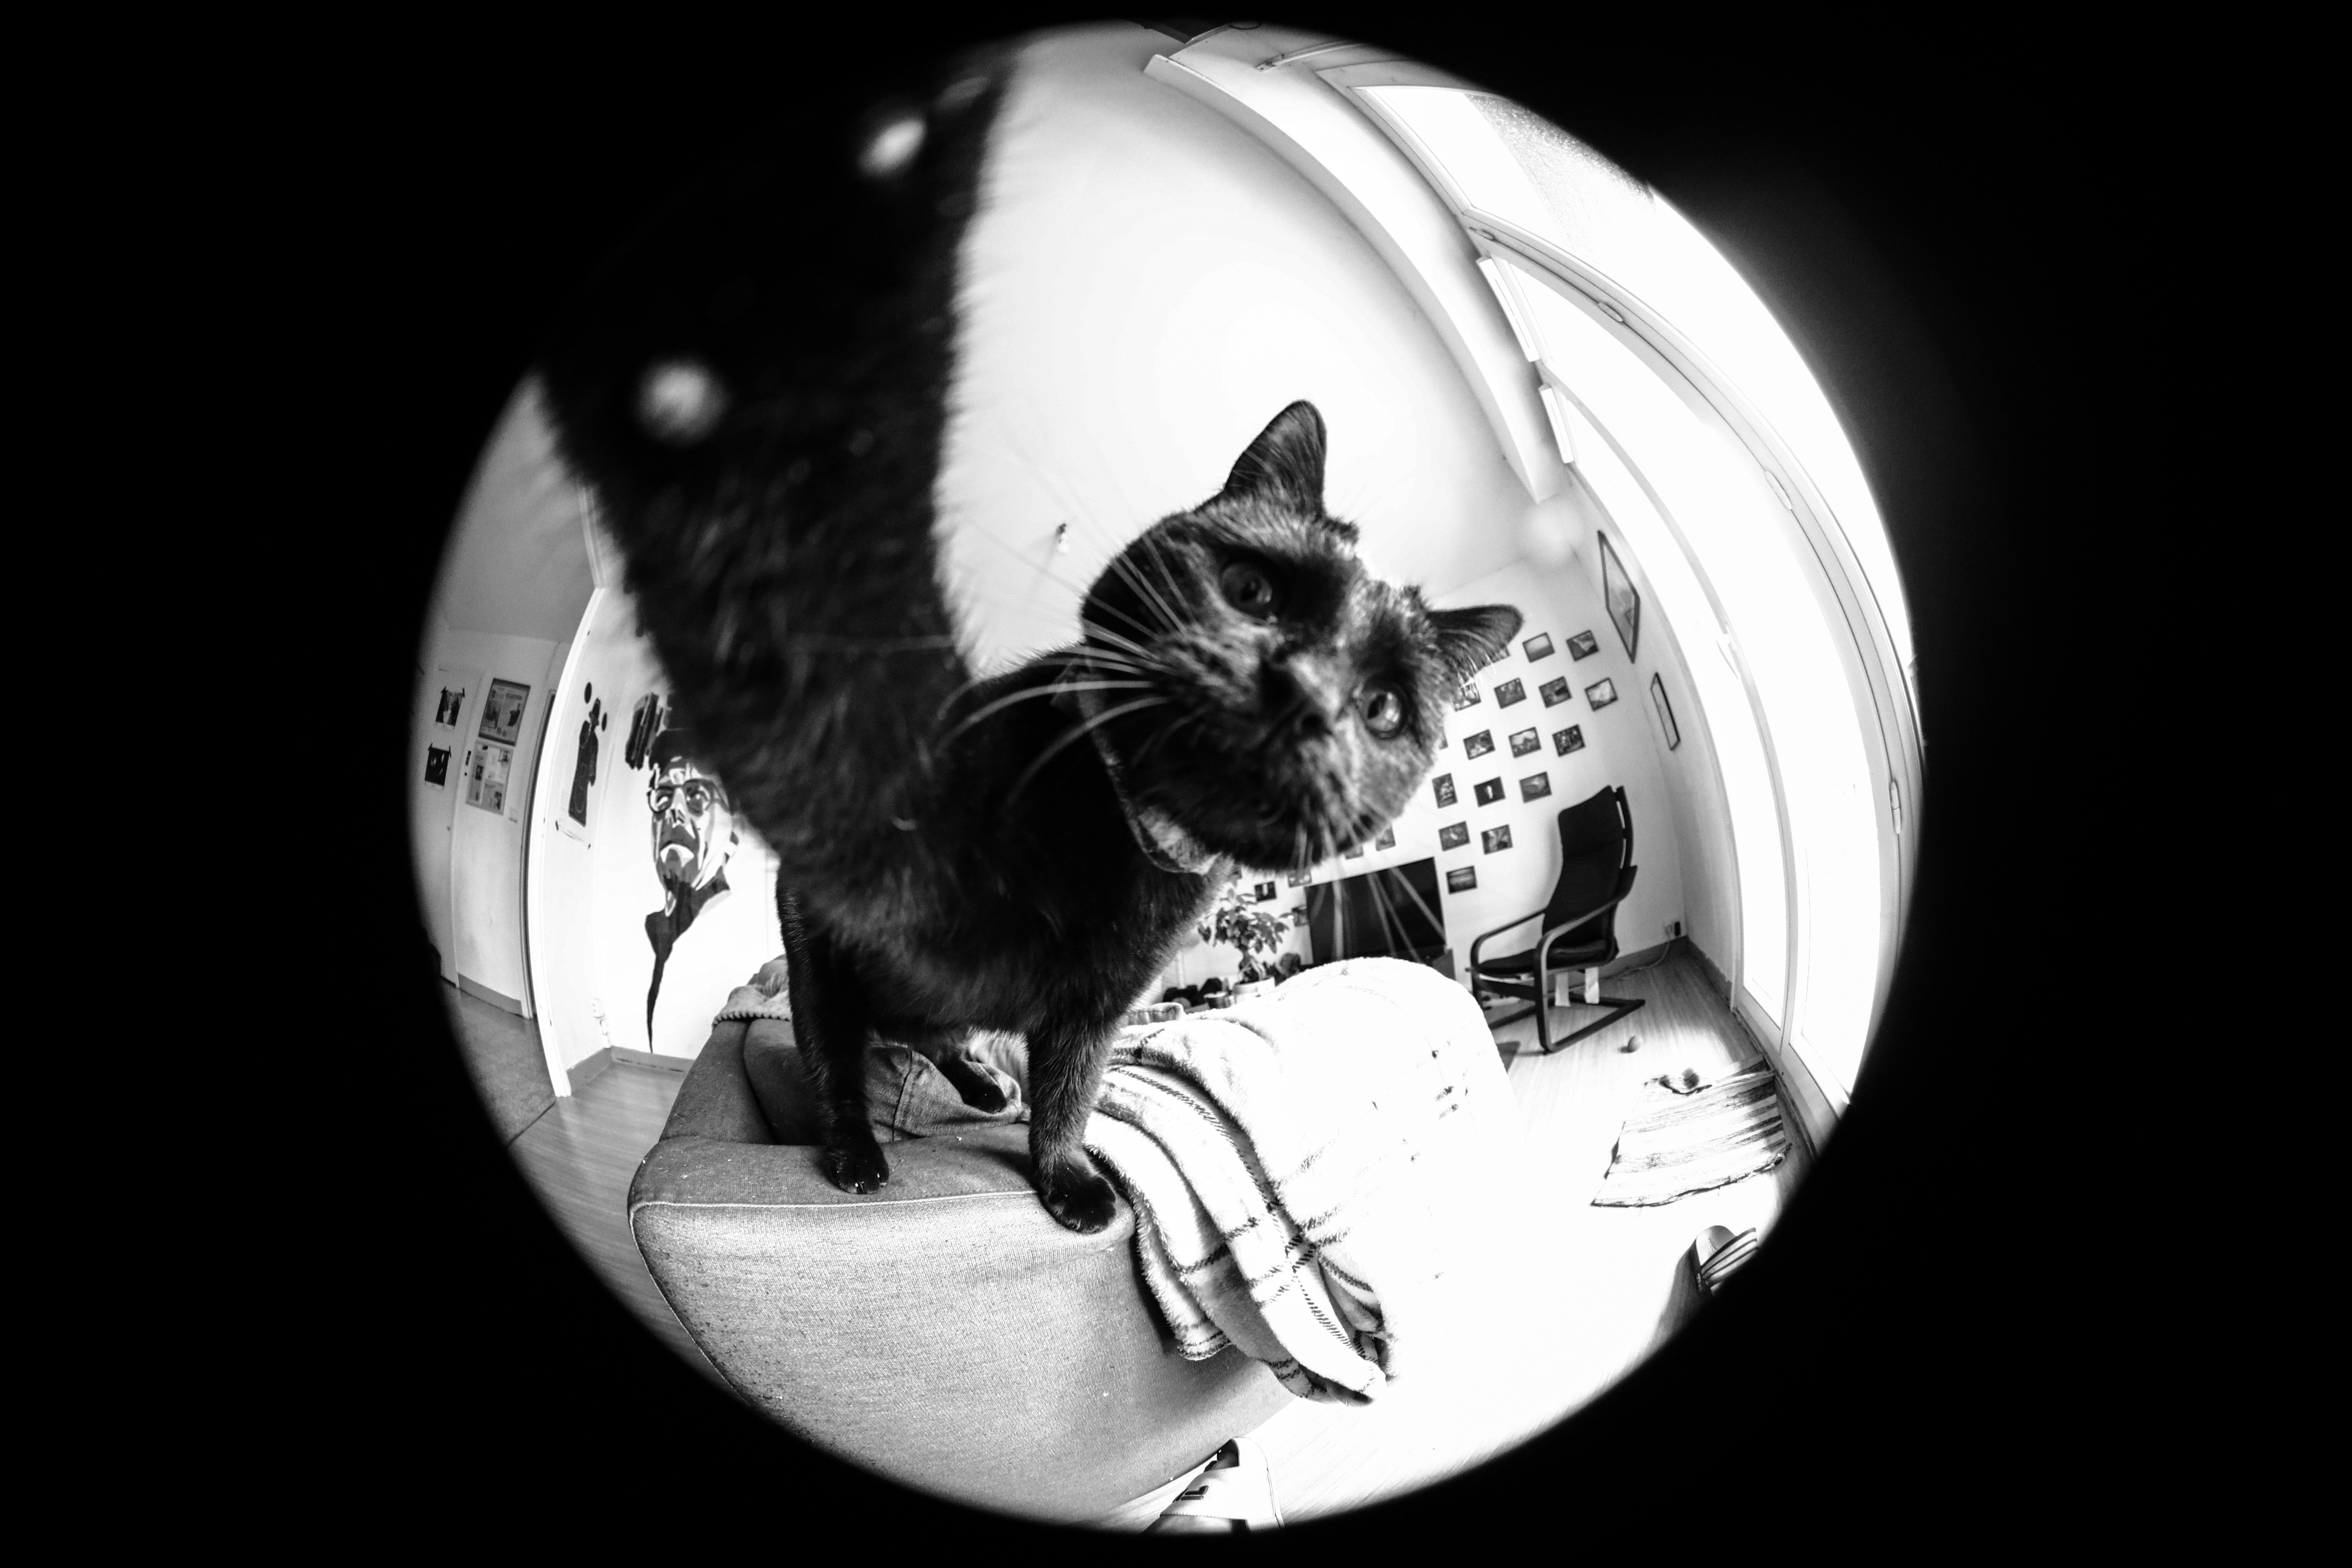 Je vous présente mon chat, Salem ! Depuis tout petit je l'ai accoutumé à l'appareil photo, donc il est plutôt à l'aise face à l'objectif ! 